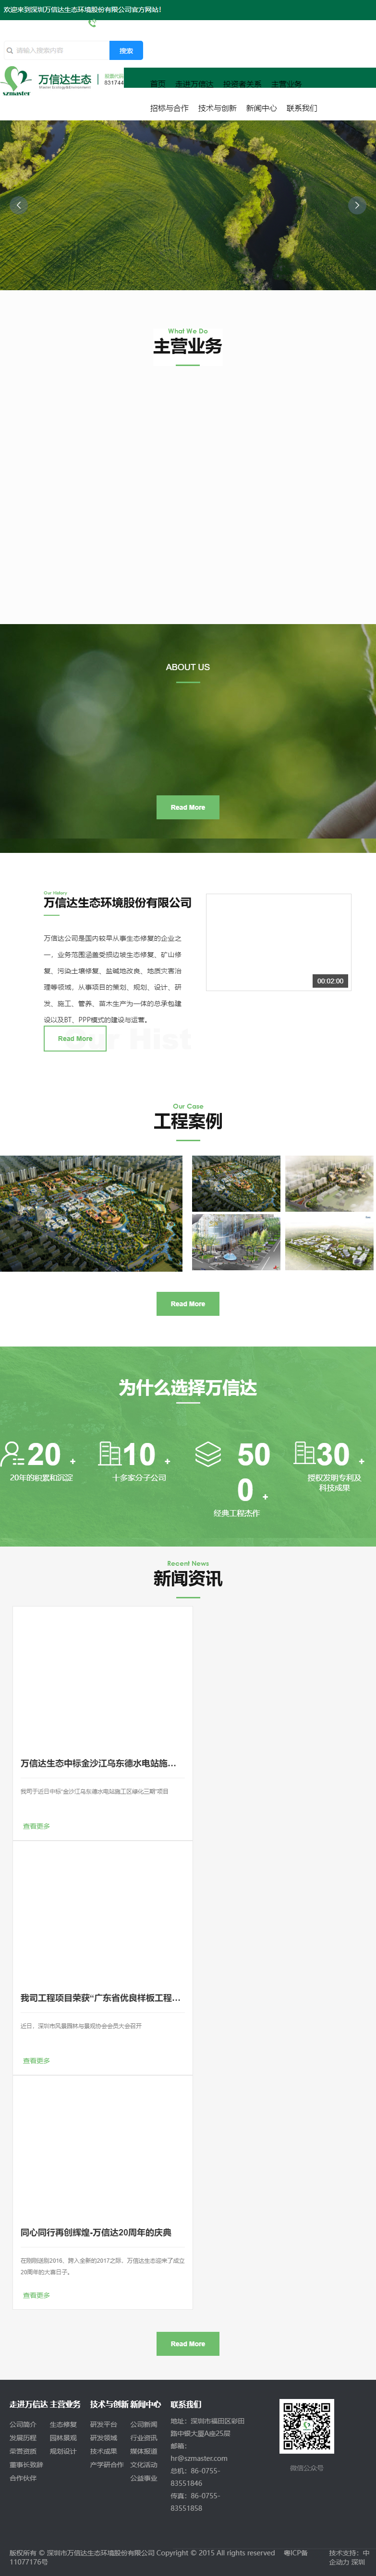 深圳市万信达生态环境股份有限公司网站案例